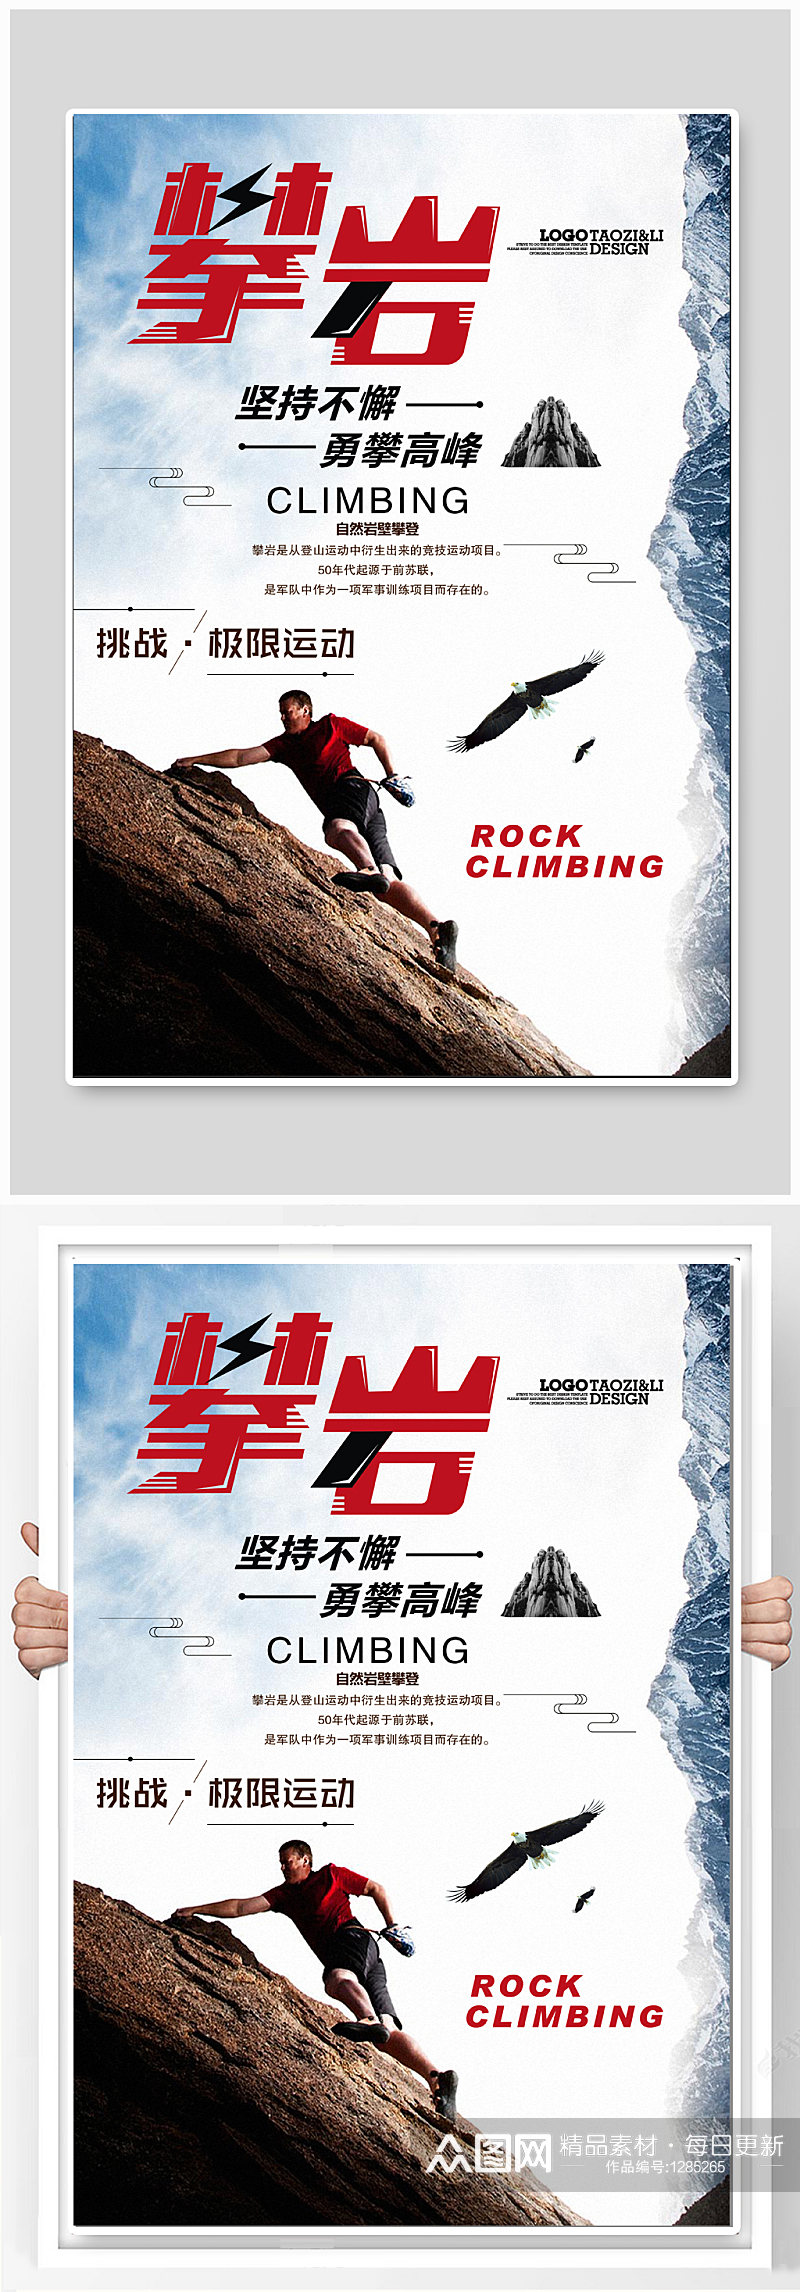 攀岩体育运动宣传海报 攀登者宣传海报素材